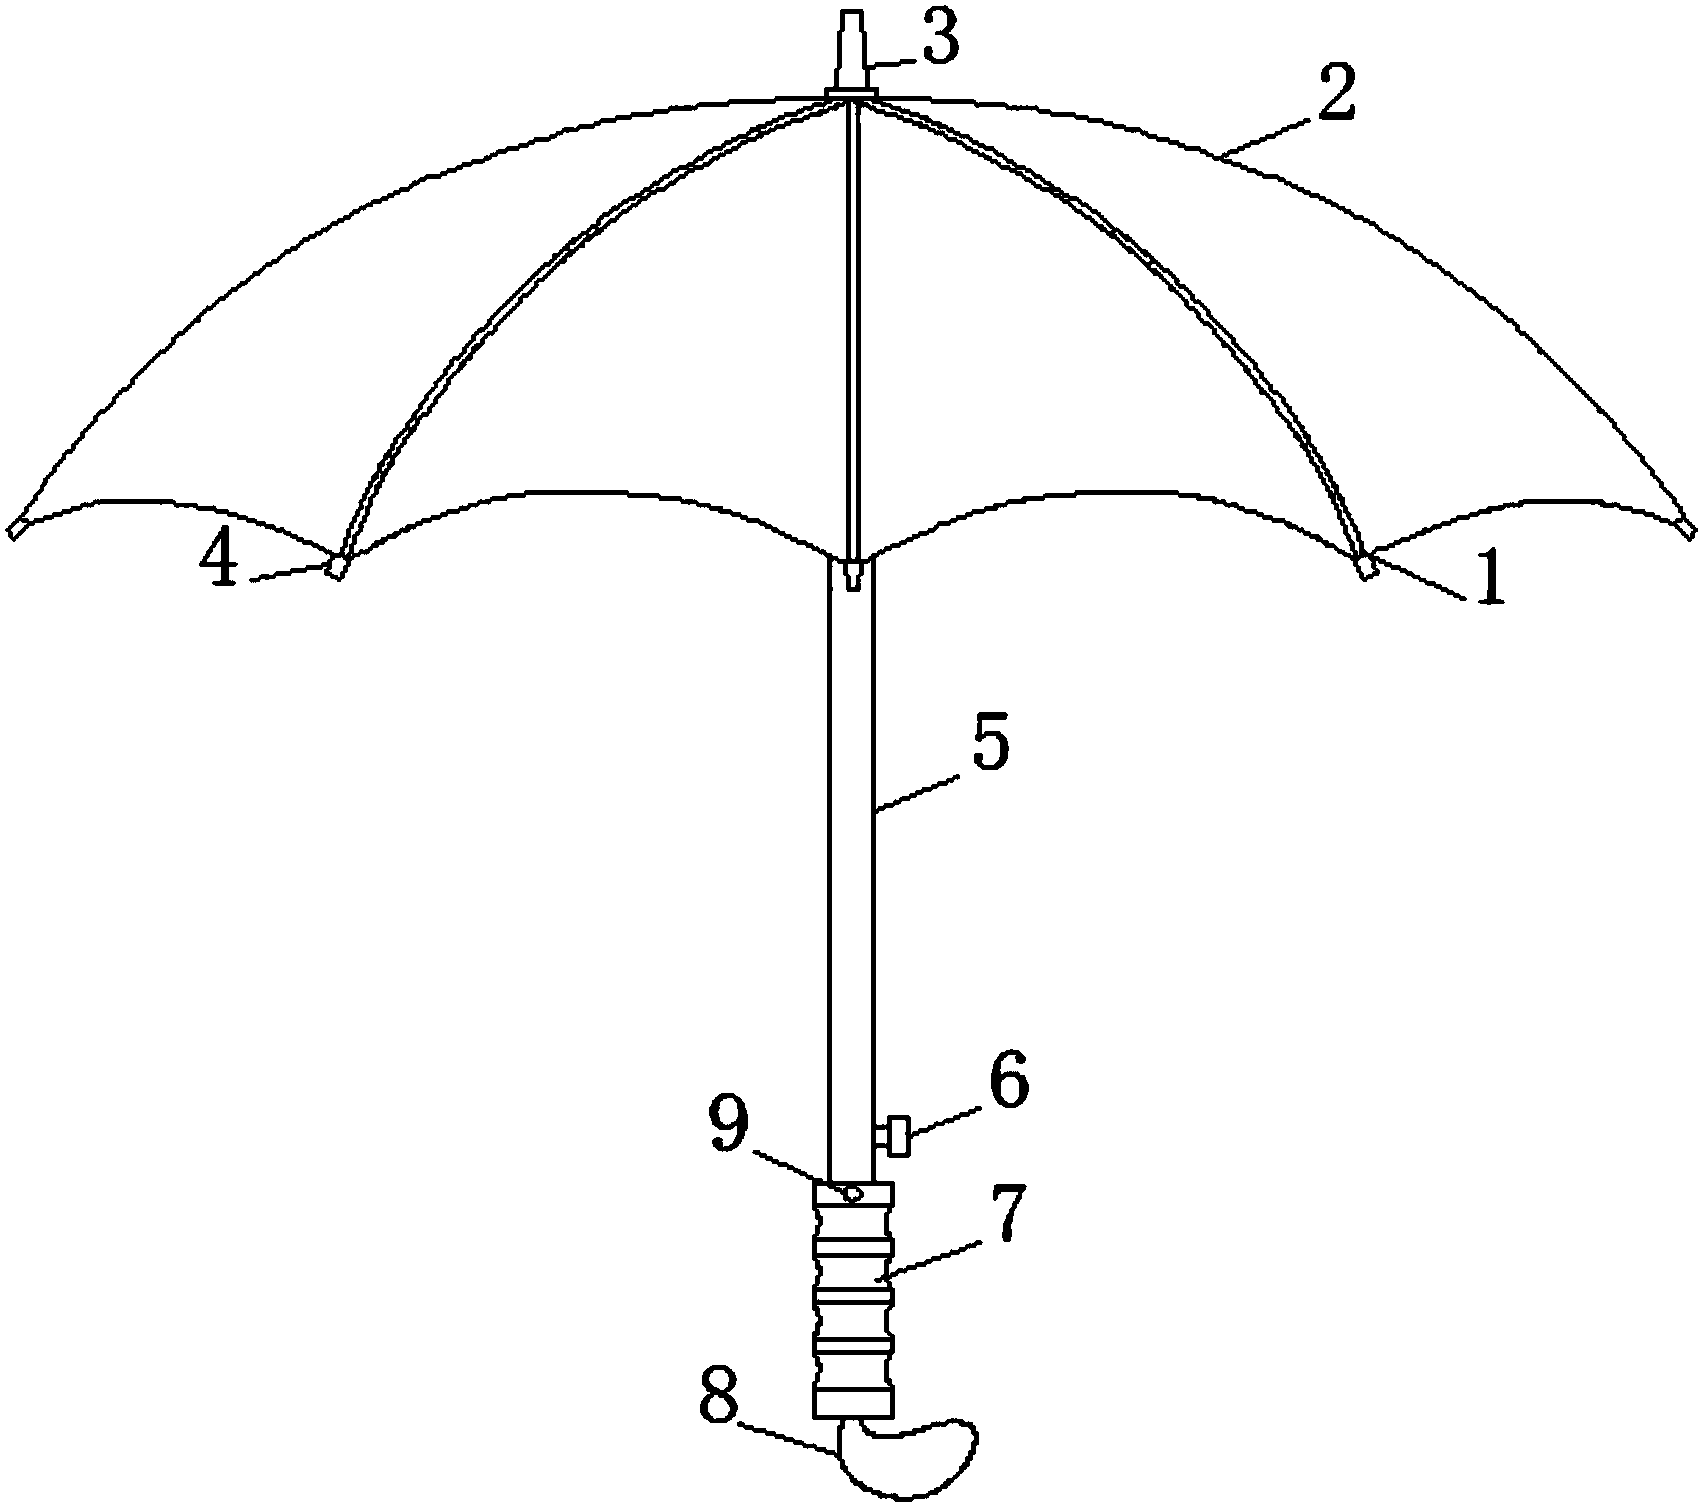 伞的结构简图图片